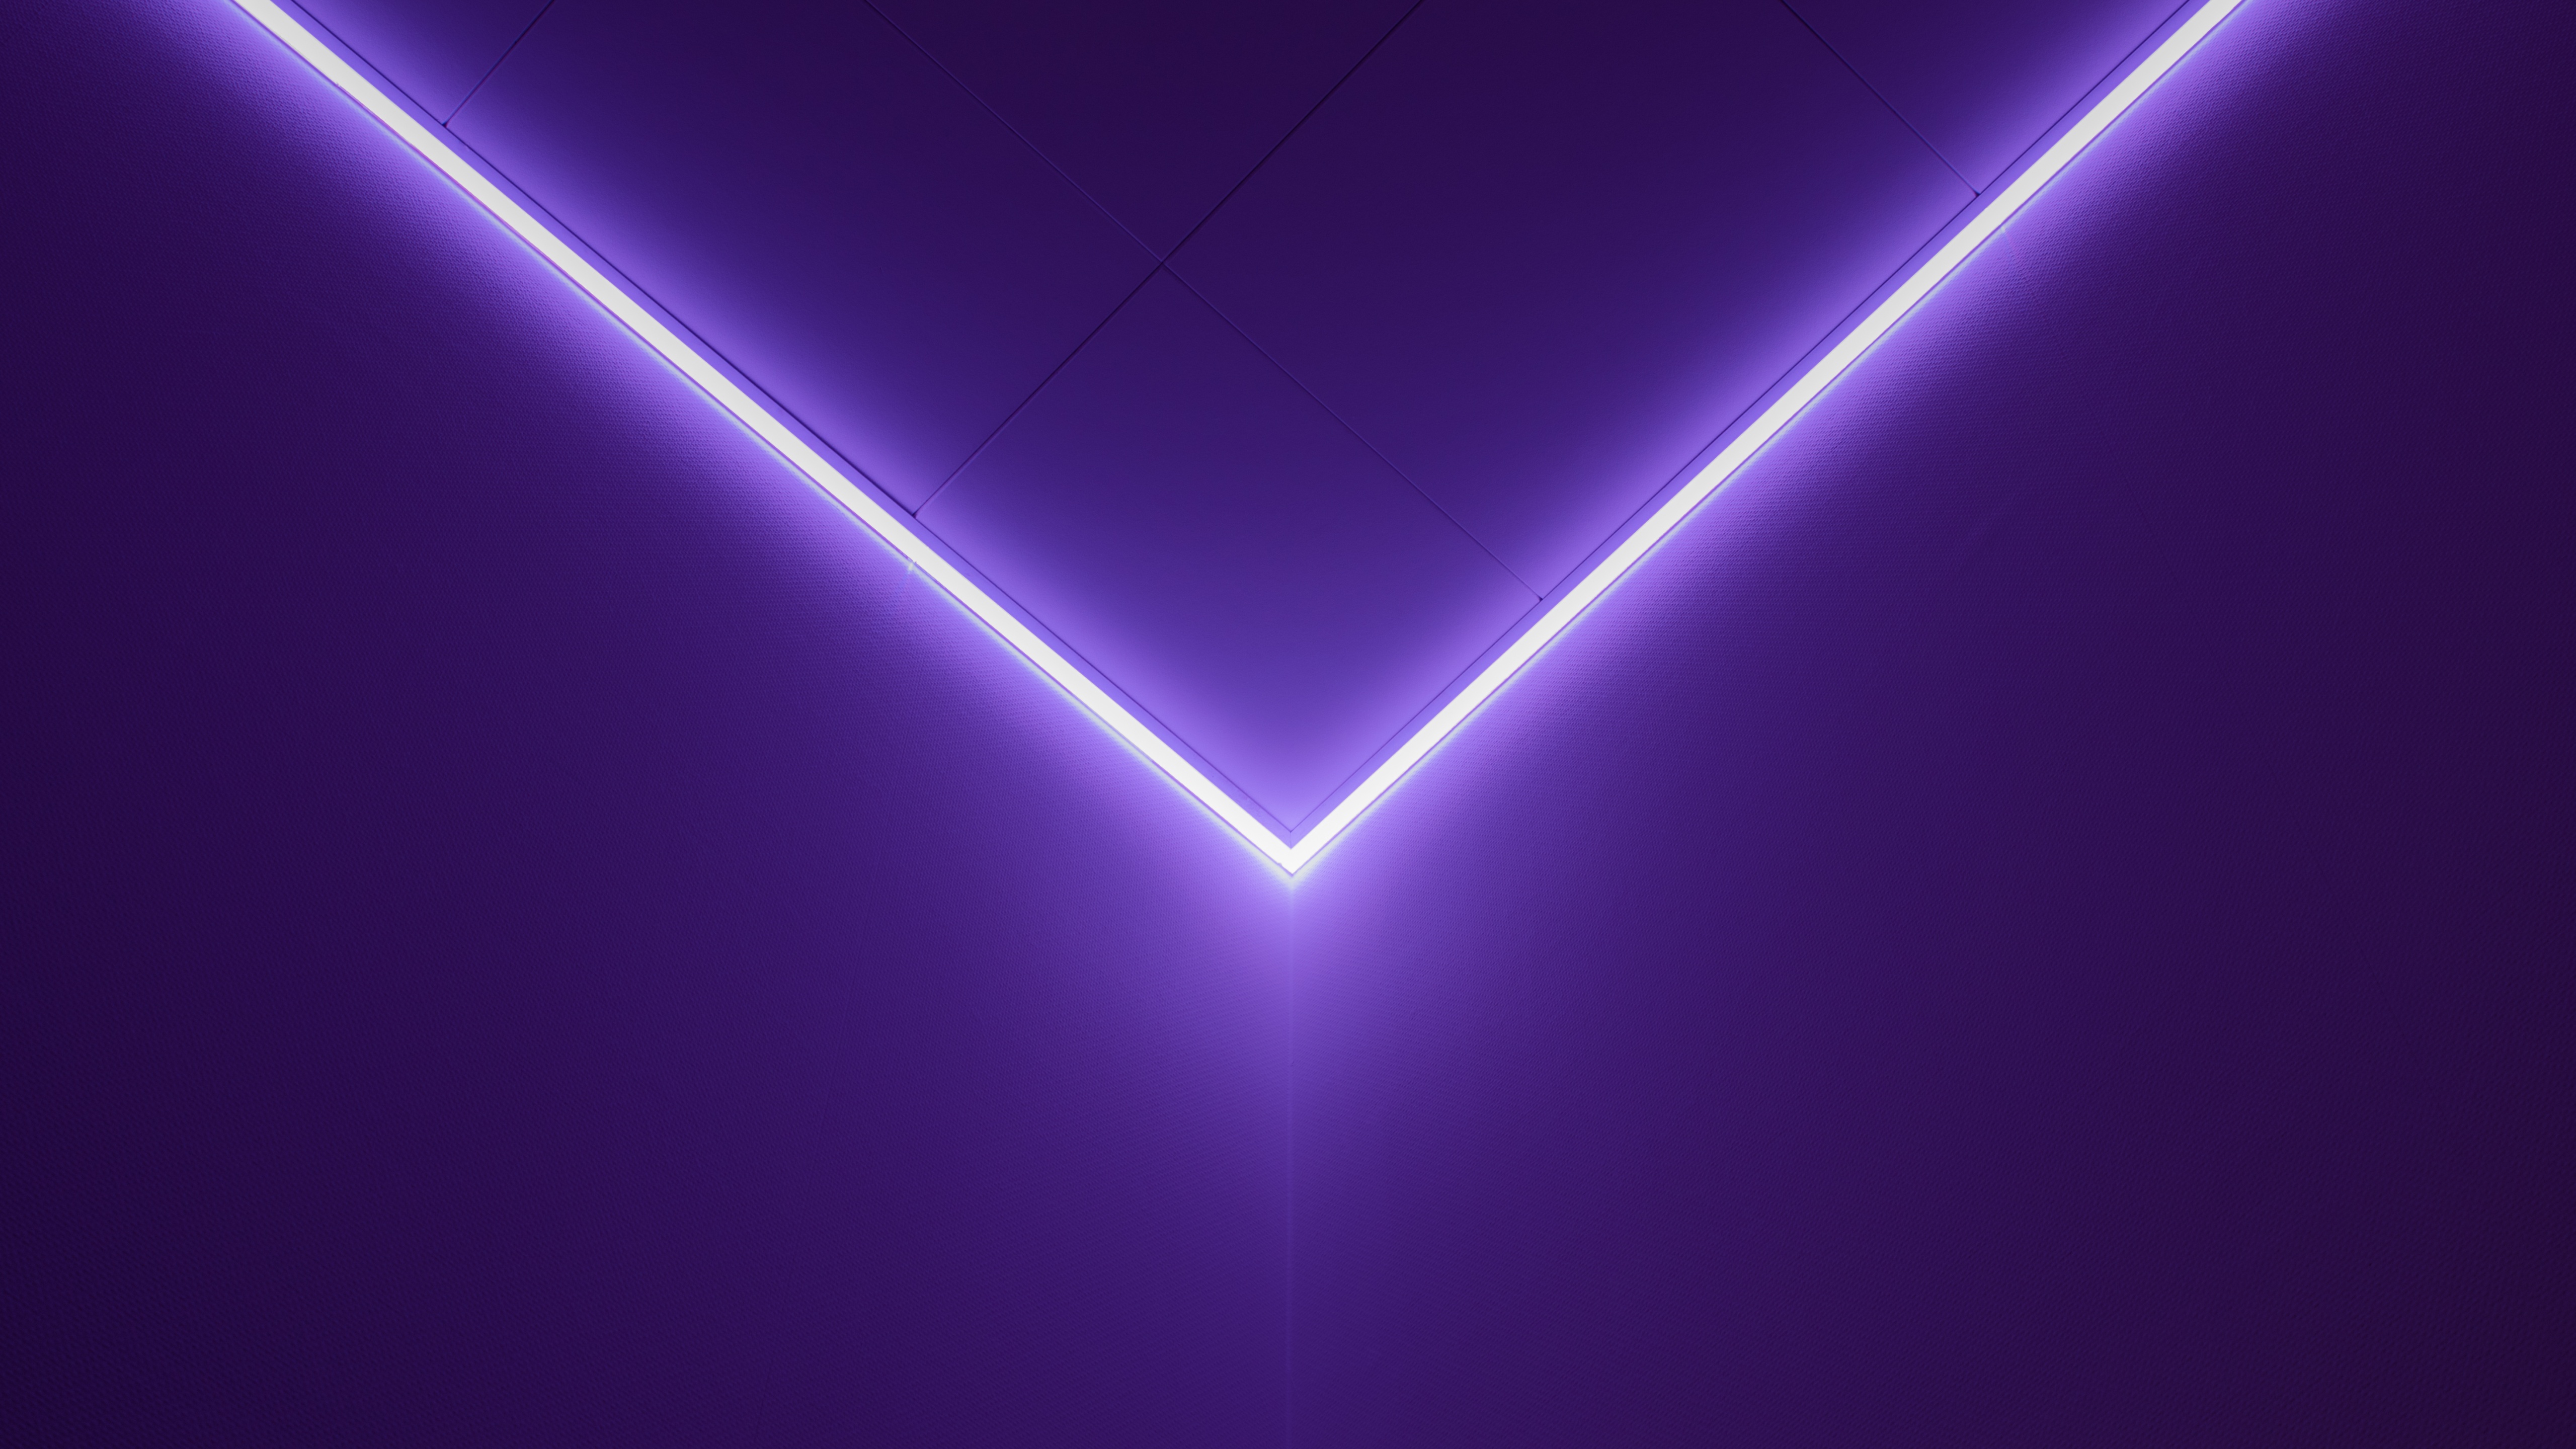 Nền tảng ánh sáng tím - (Purple light background): Tận hưởng vẻ đẹp tuyệt vời của ánh sáng tím đầy mộng mơ và ấn tượng với nền tảng ánh sáng tím quyến rũ này. Hãy cho tâm trí của bạn trôi nổi giữa những ánh sáng đậm chất màu tím và tạo ra phong cách độc đáo chỉ có riêng bạn.